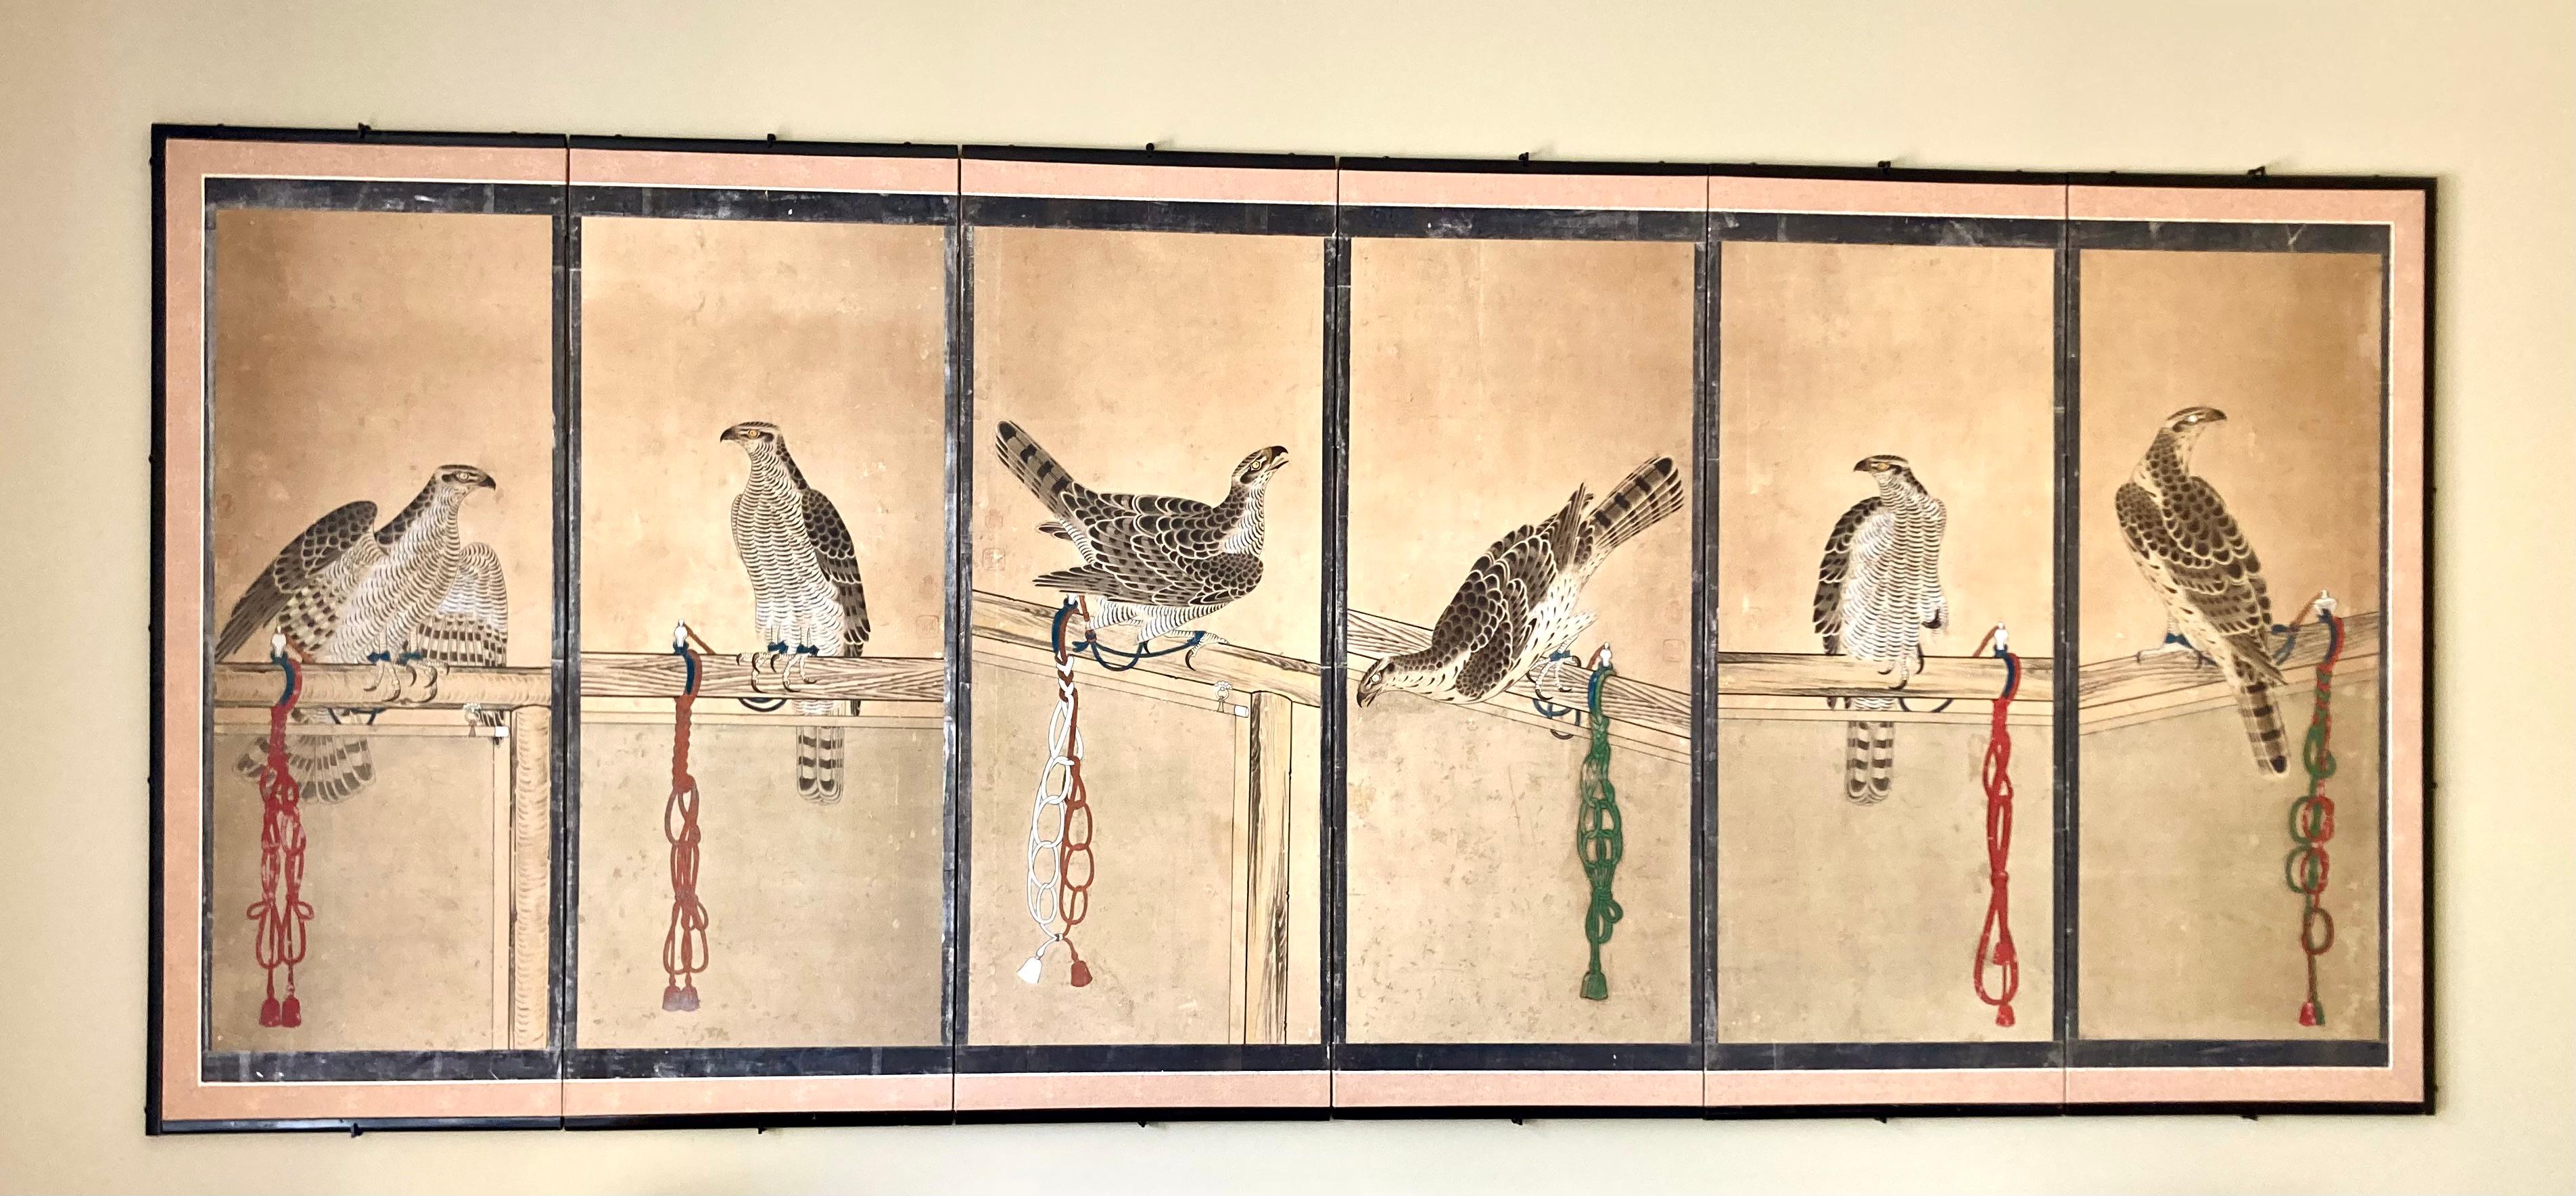 Eine beeindruckende japanische Leinwandmalerei aus der Edo-Zeit in Tusche und Farben auf Papier. Jede der 6 gerahmten Tafeln zeigt einen Habicht, der an einer Seidenschnur mit den charakteristischen Knoten der verschiedenen Samurai-Clans an einen